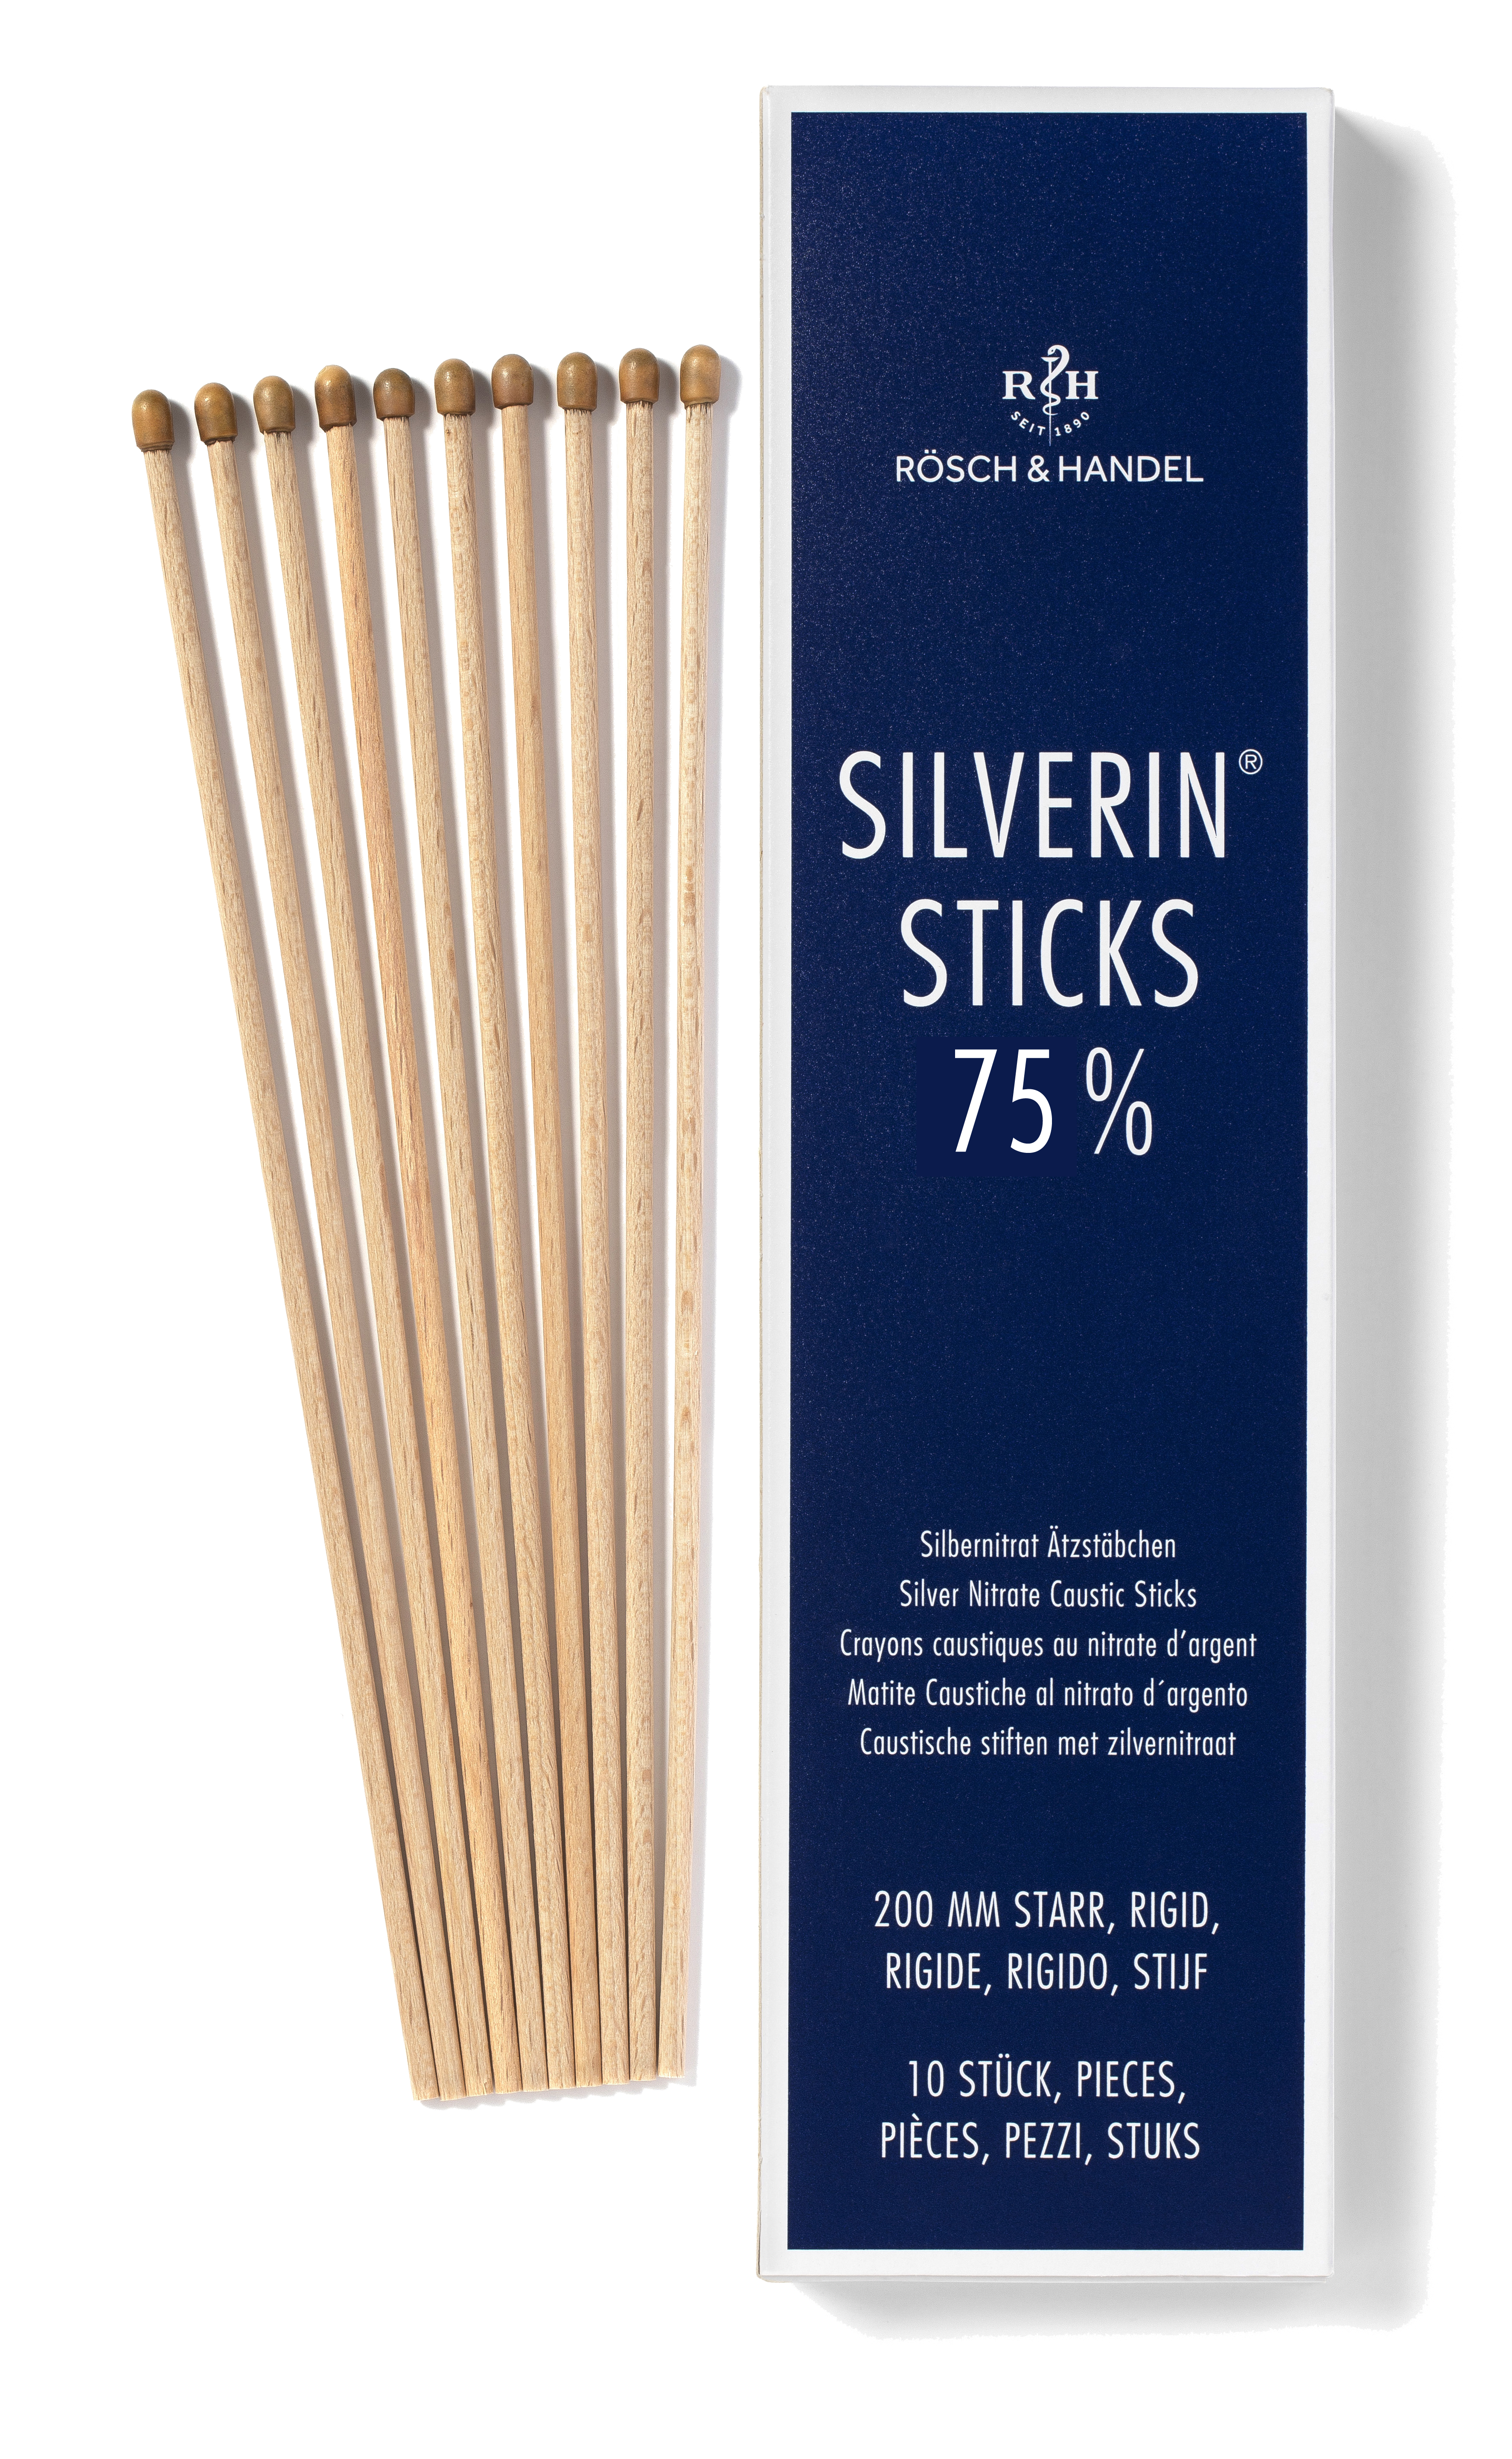 SILVERIN STICKS 75% mit Silbernitrat - 10 Stück